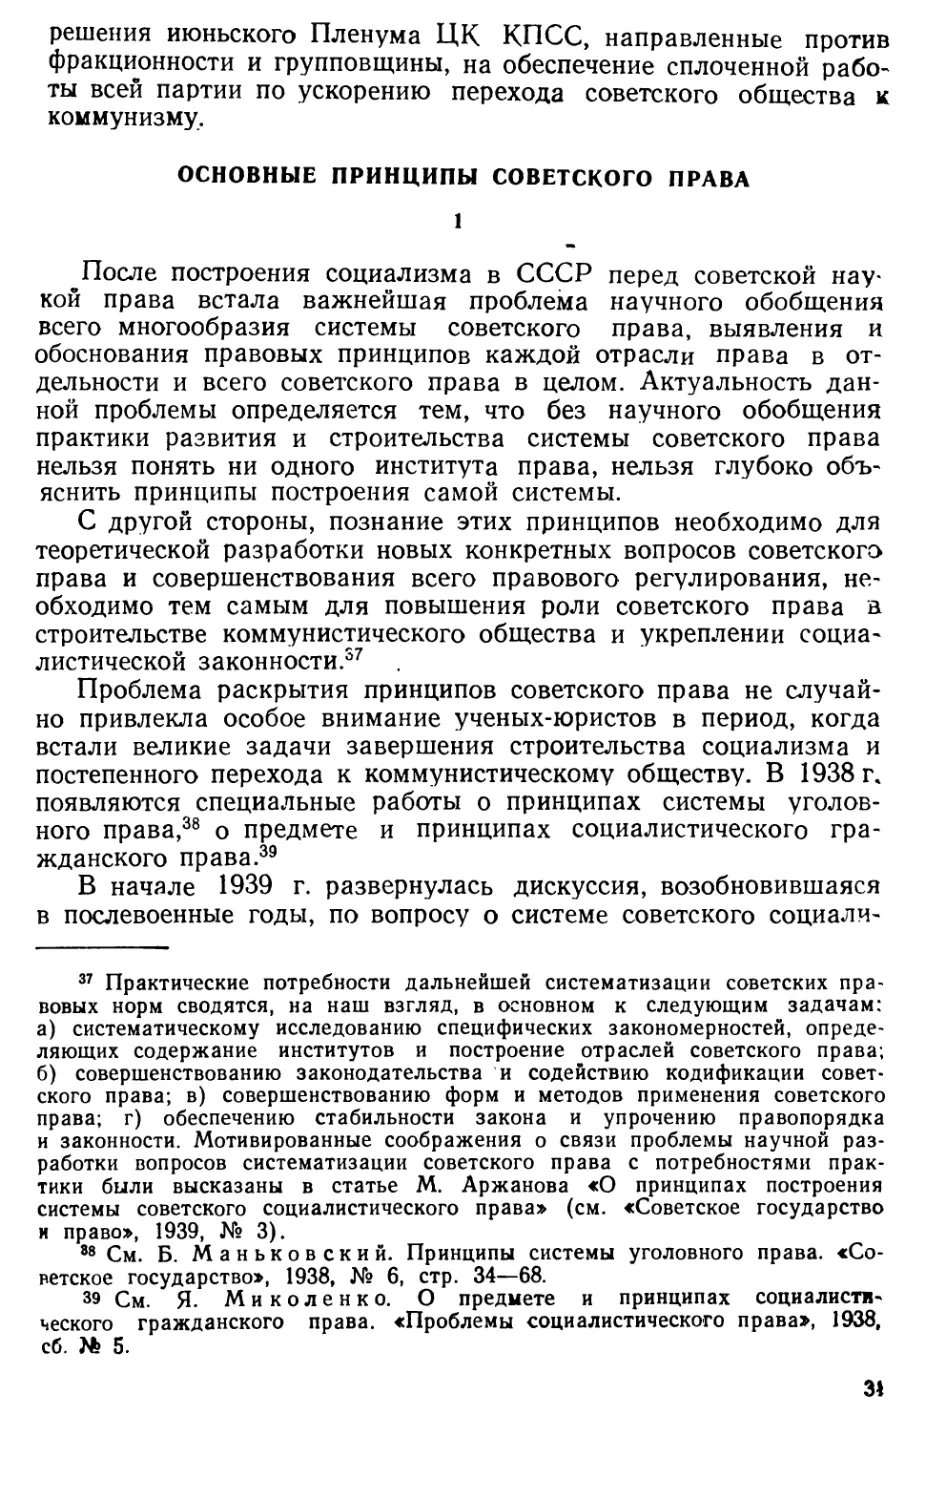 Основные принципы советского права.